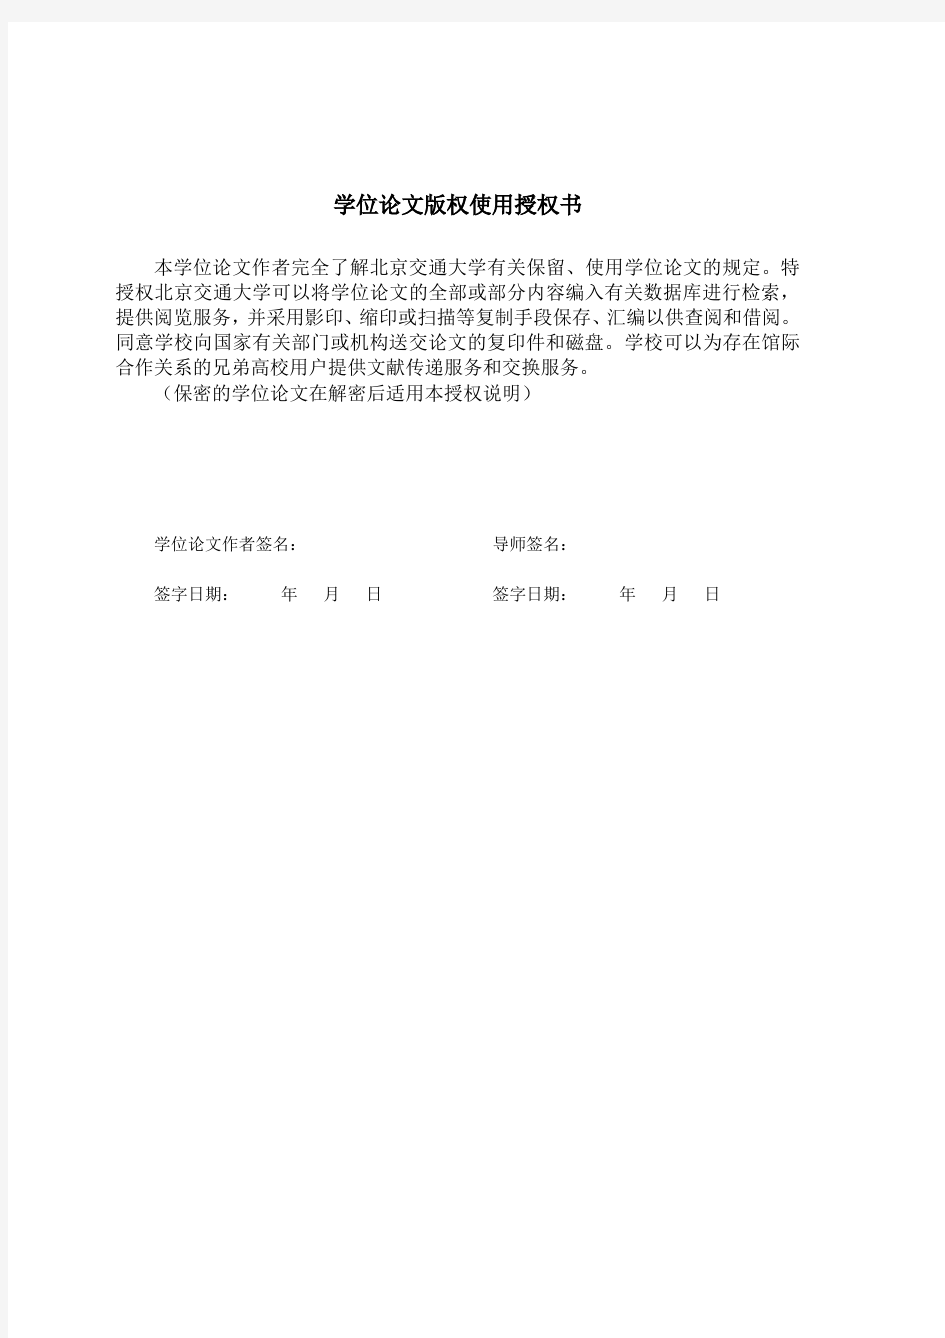 2018年北京交通大学硕士论文格式模板